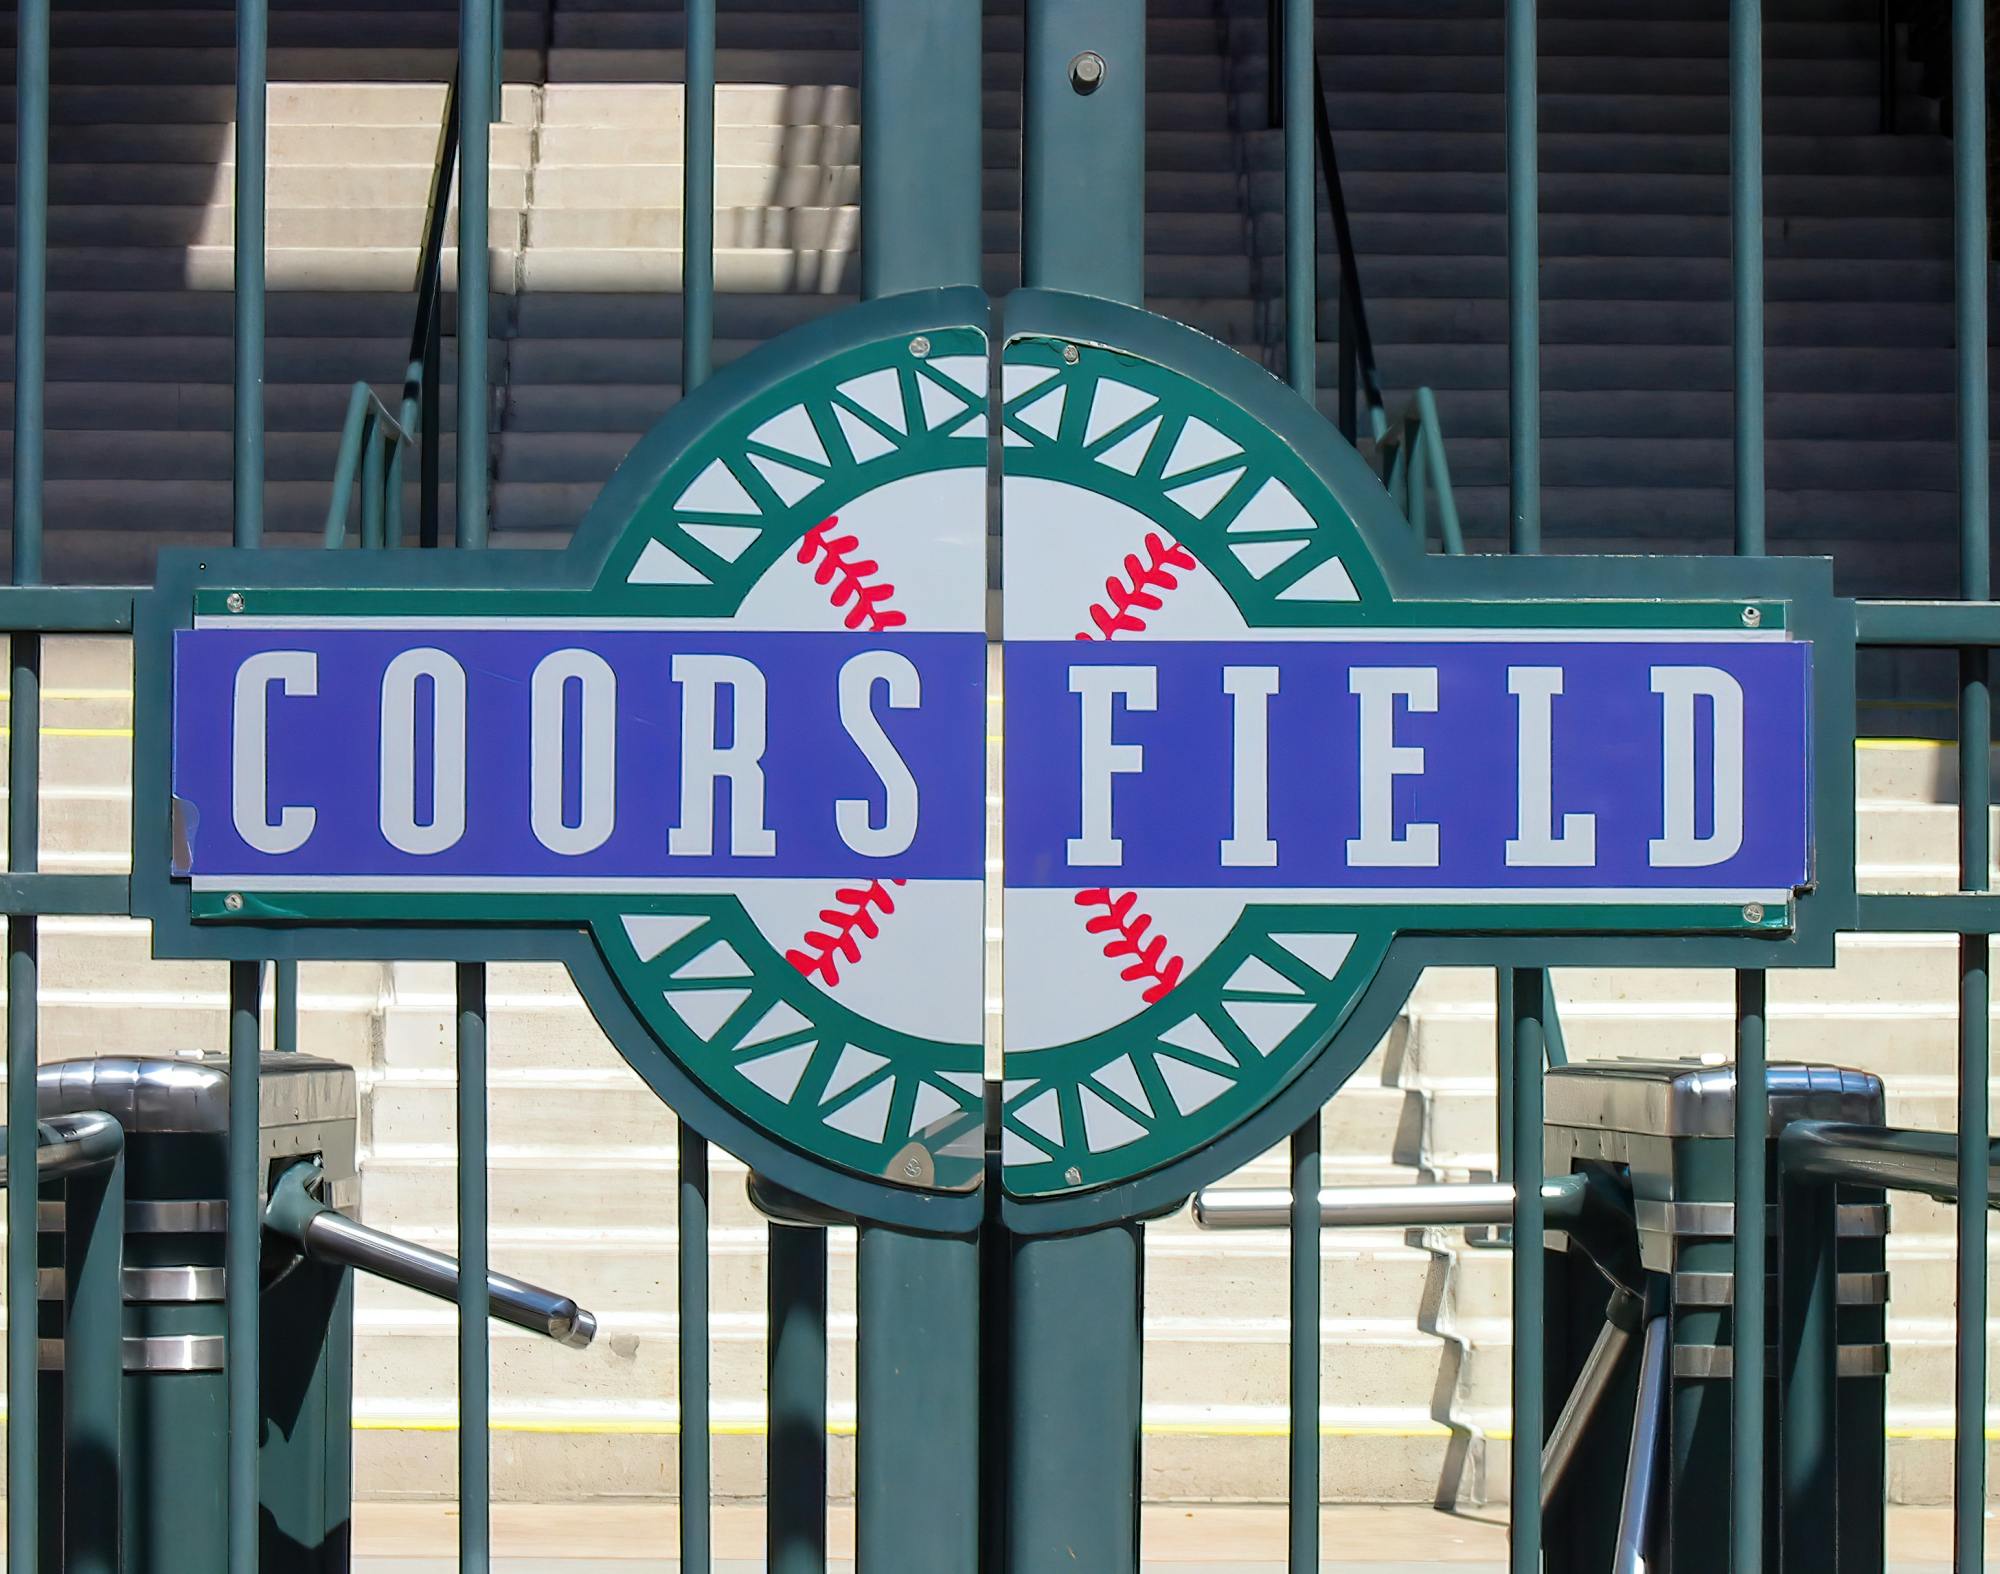 Colorado Rockies Baseball Game at Coors Field